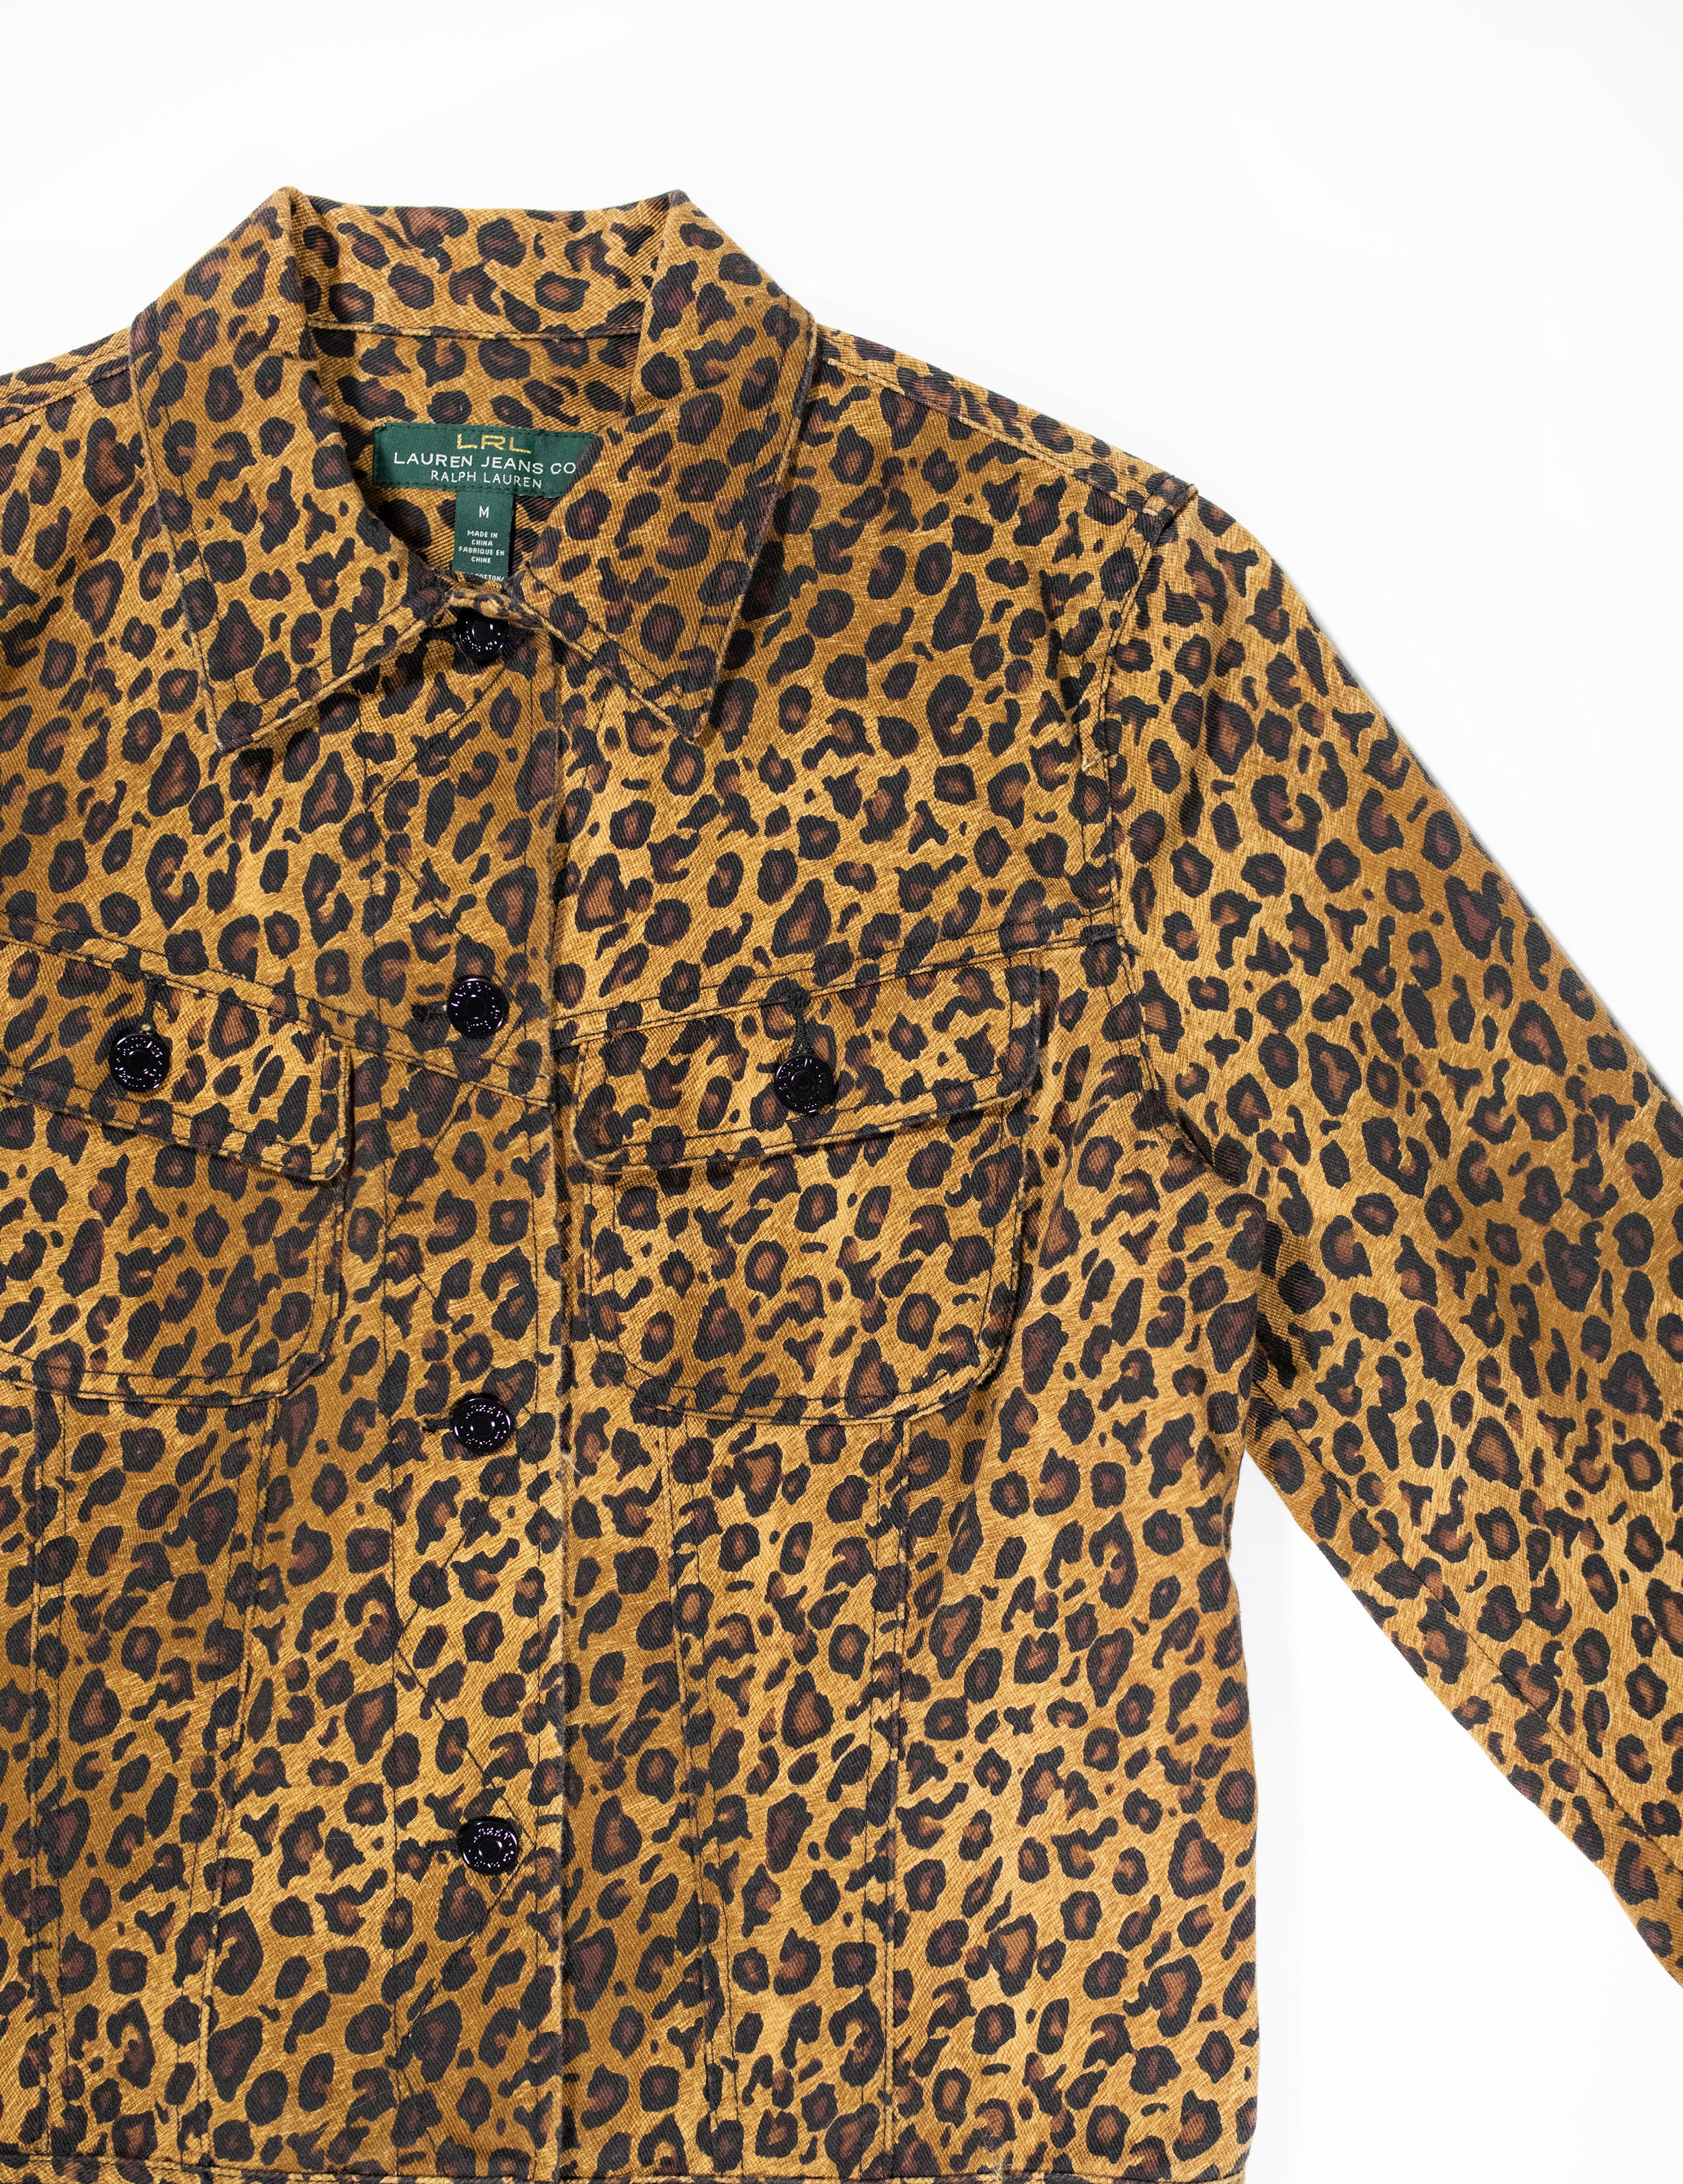 LRL Leopard Jacket